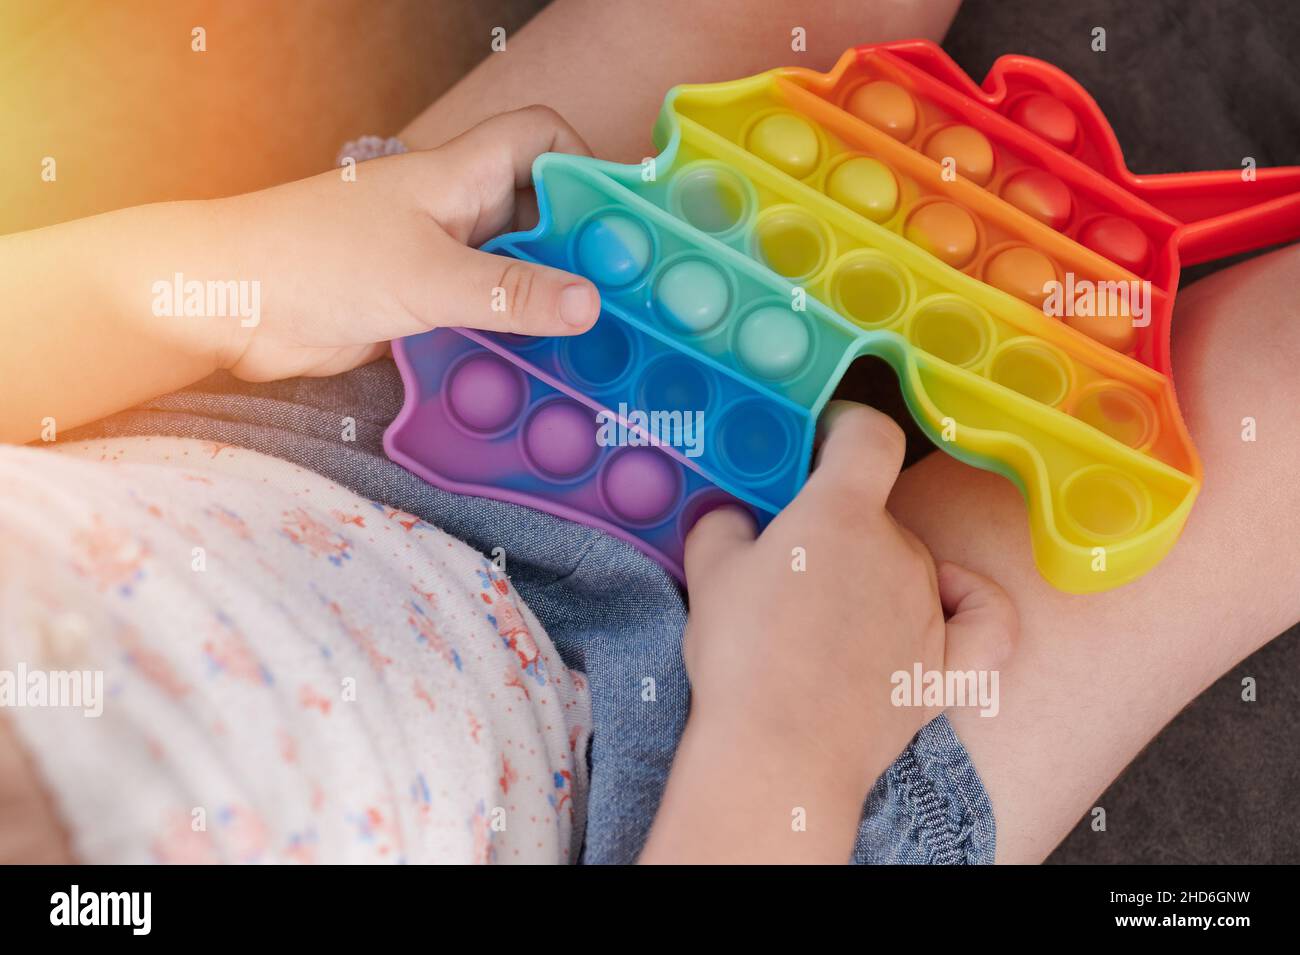 Premi la bolla colorata nel giocattolo popit. Trend gioco per bambini Foto Stock